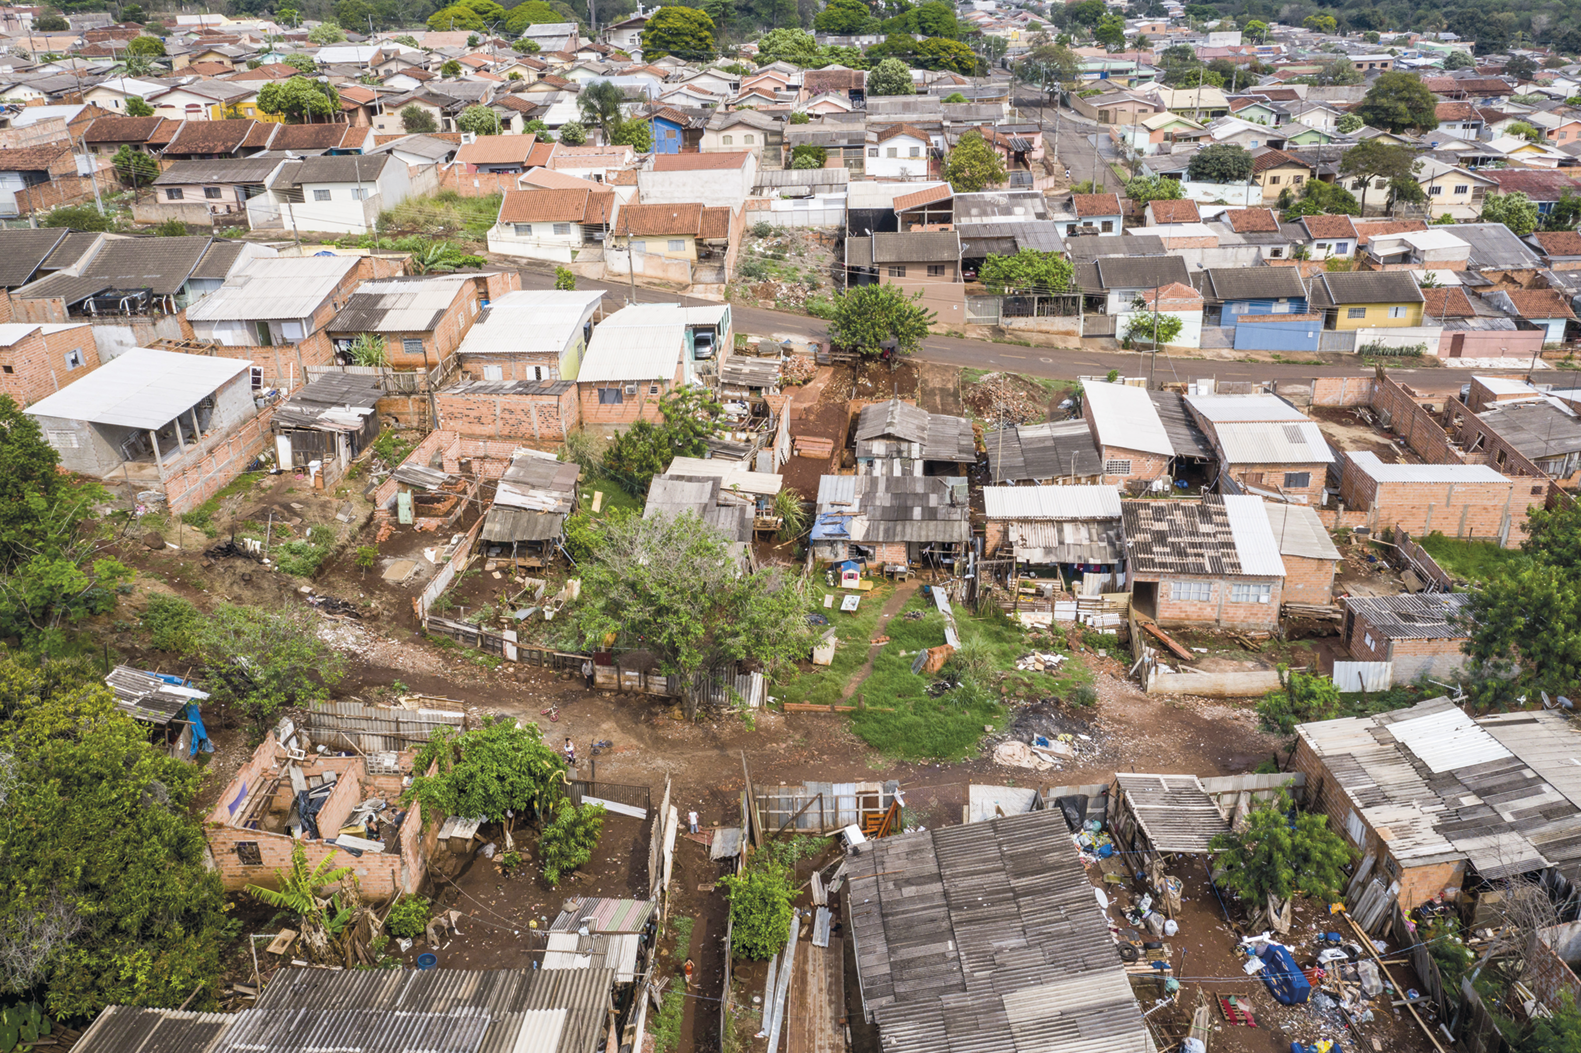 Fotografia. Vista aérea. Diversas casas amontoadas em uma área de terra com árvores. Há um terreno com lixo.